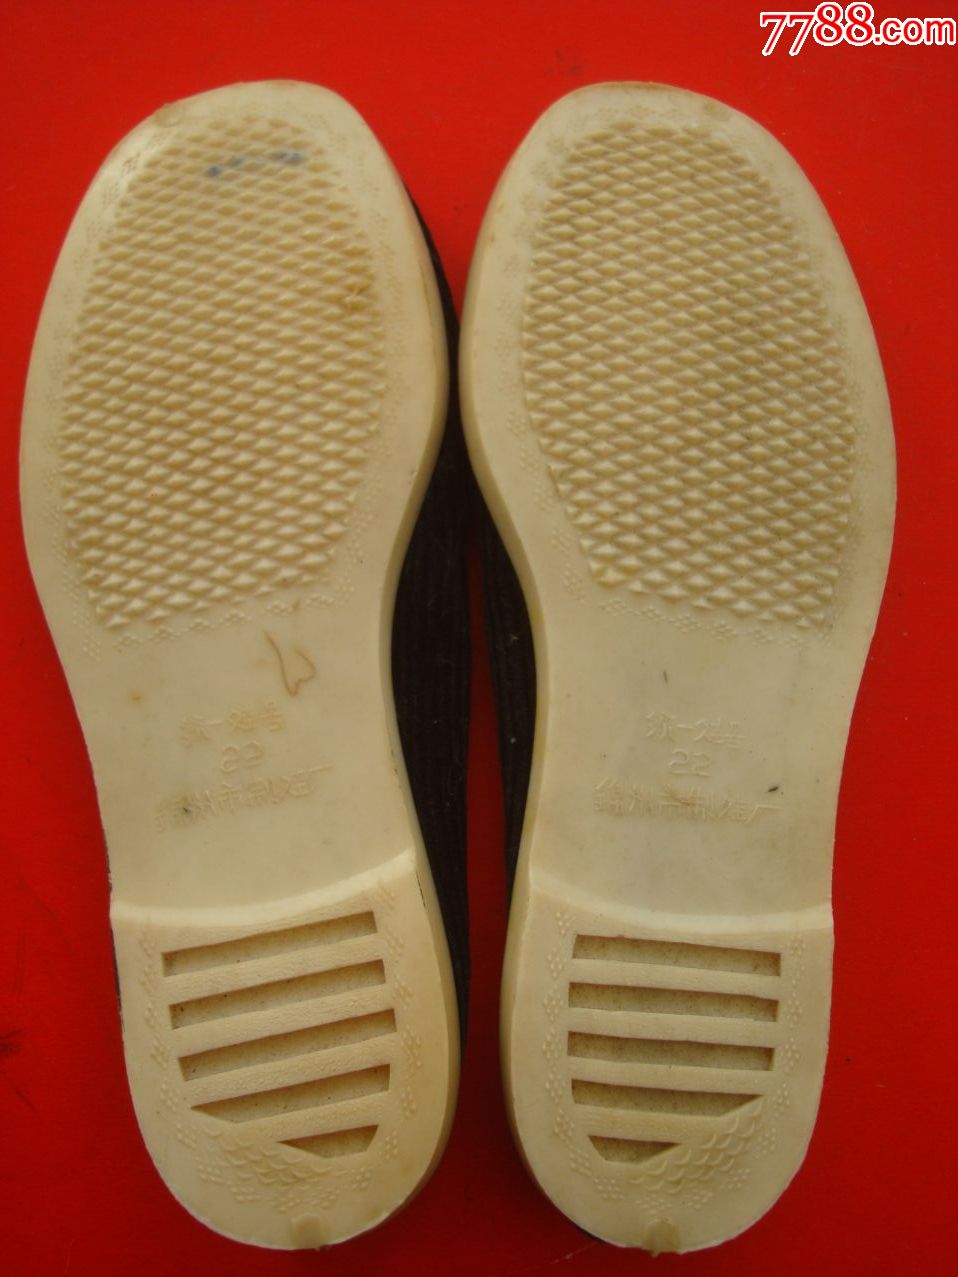 锦州制鞋厂【34码】白塑料底黑条绒布鞋【全新,软底-男女